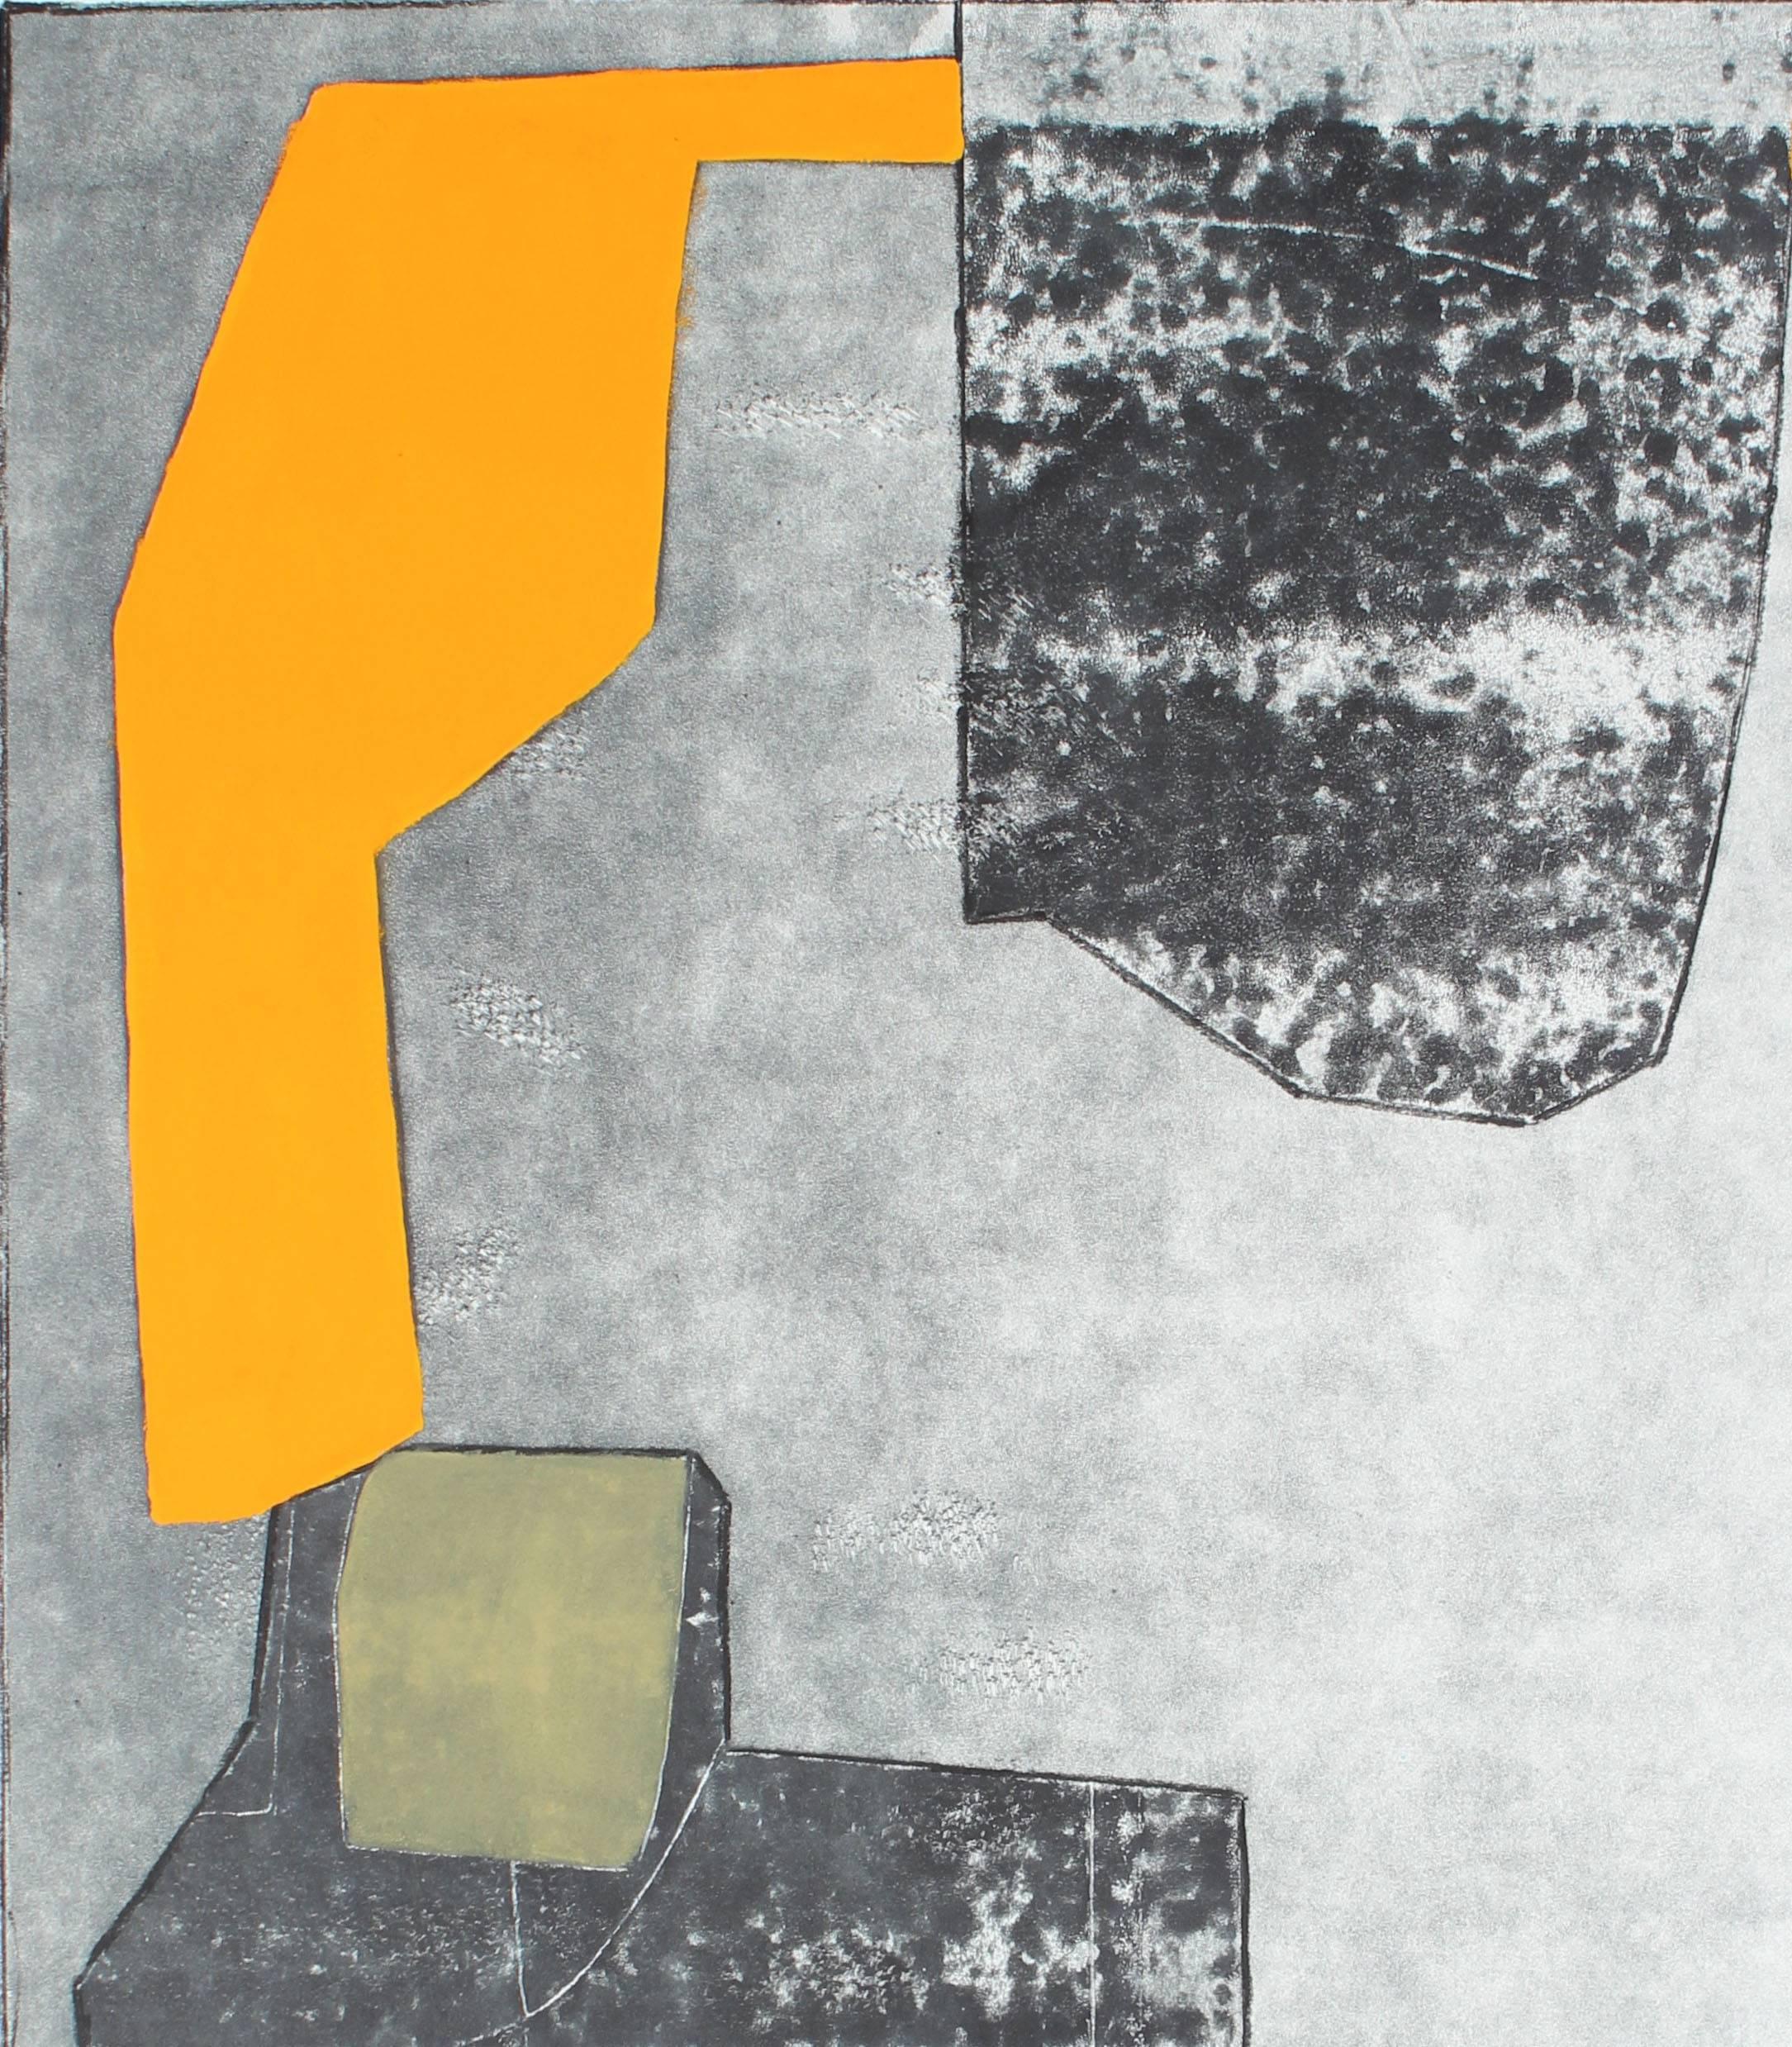 Rob Delamater Abstract Drawing - "Hello, Marigold" Abstract Monoprint, 2015